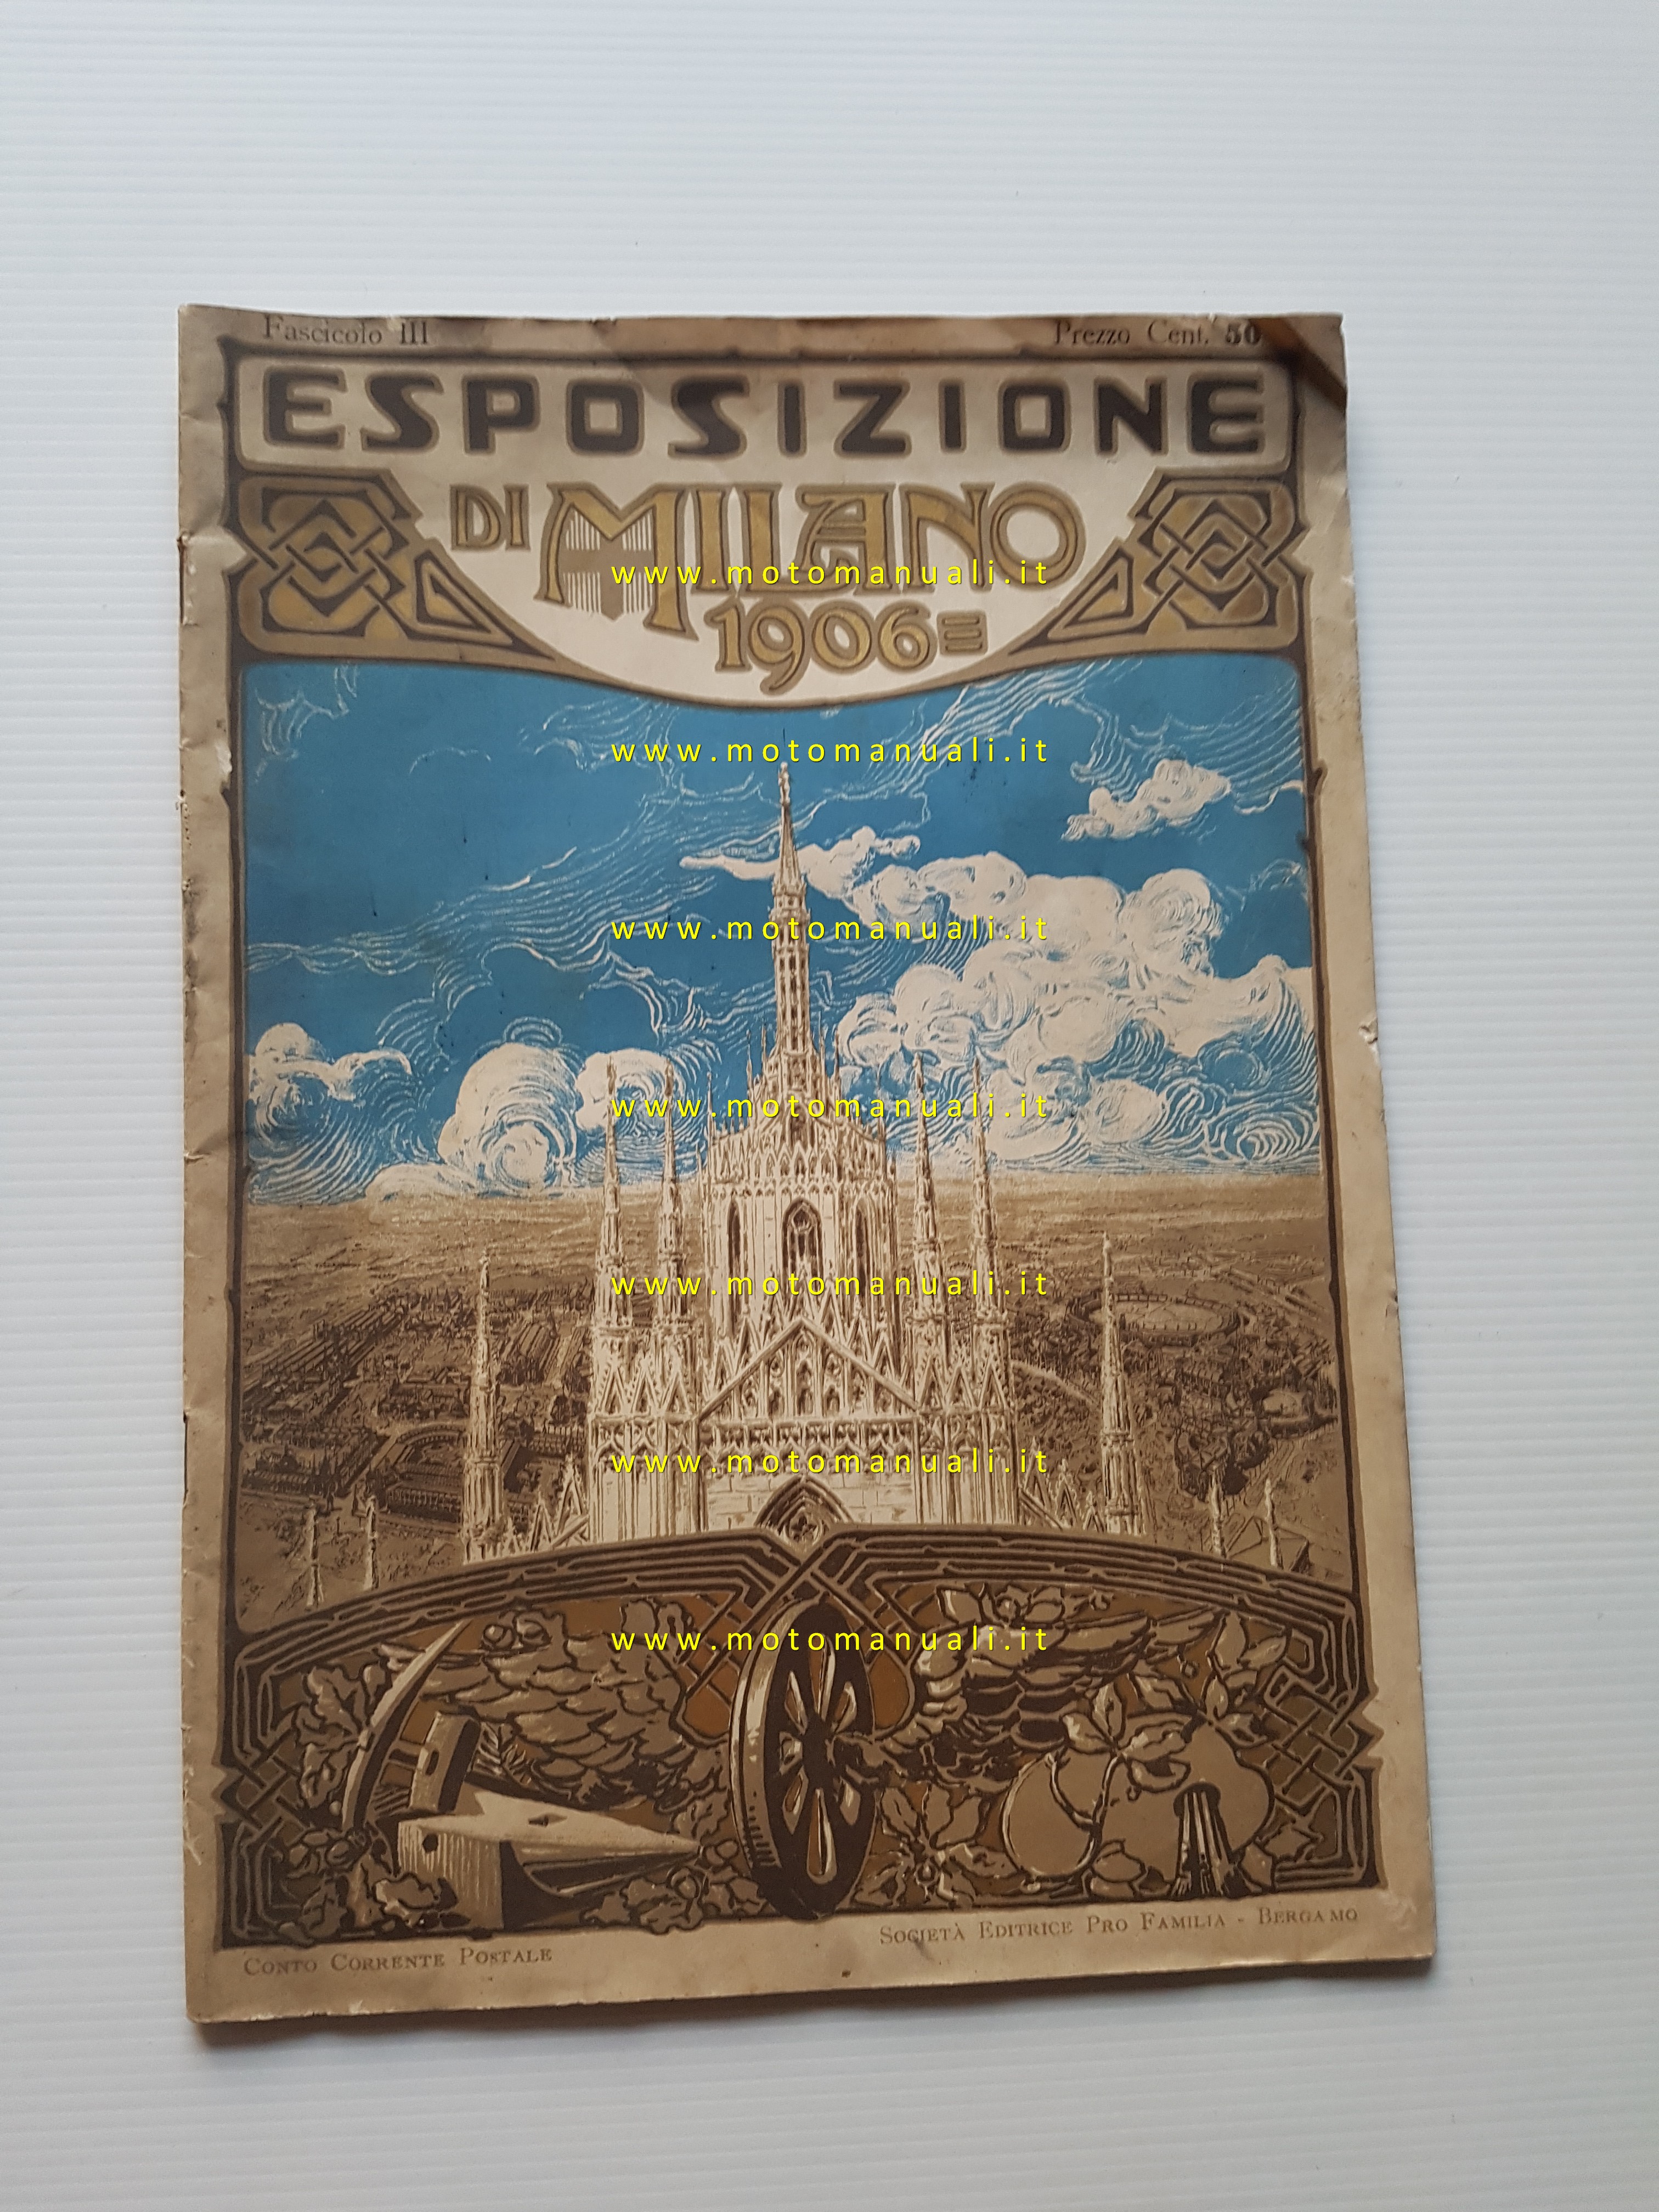 Esposizione di Milano 1906 fascicolo III